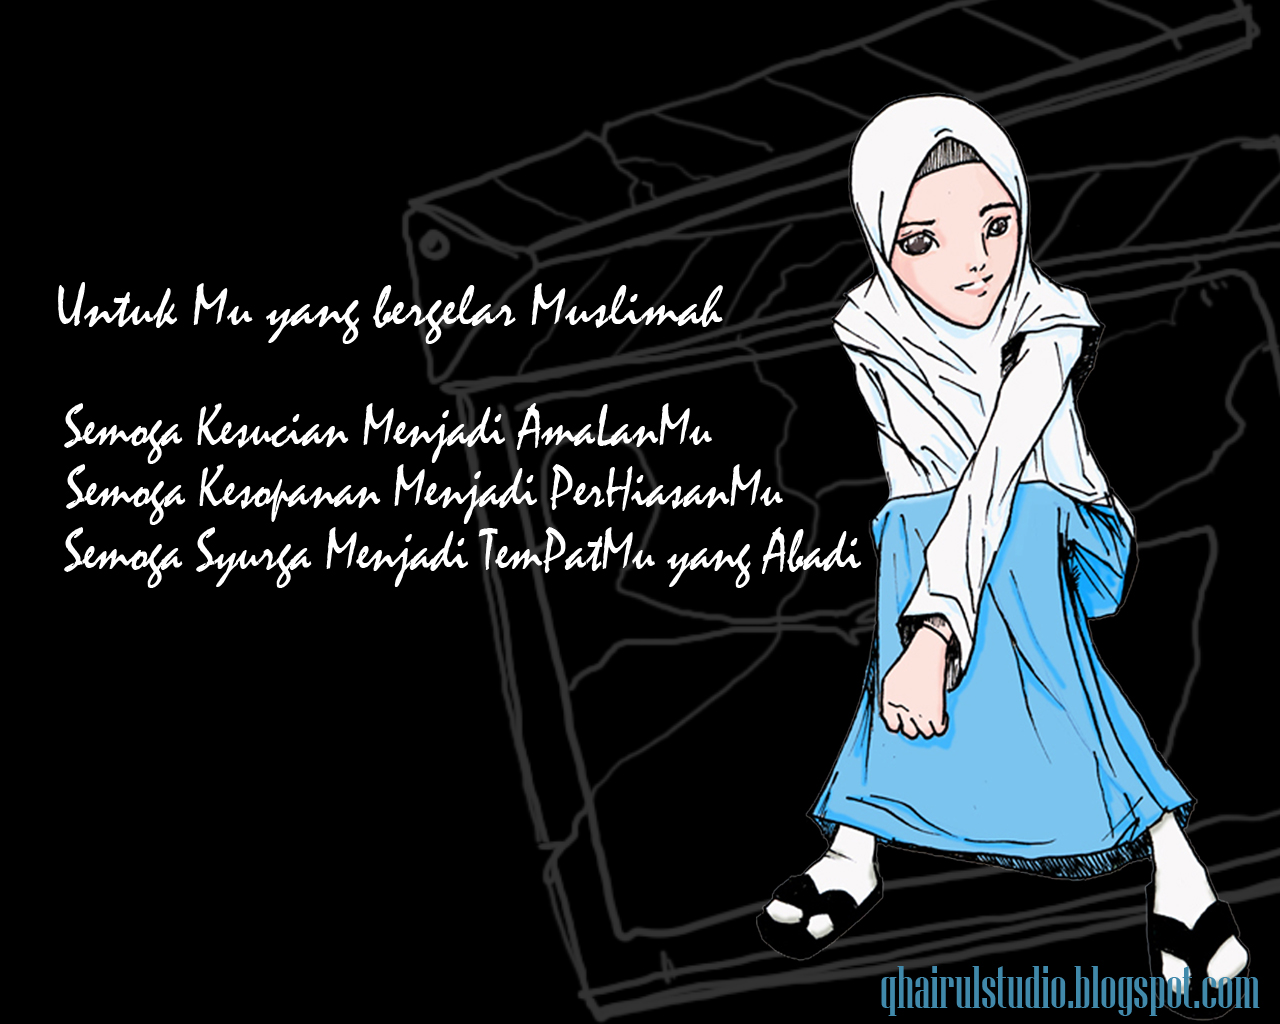 tapete muslimah,karikatur,text,schriftart,illustration,animation